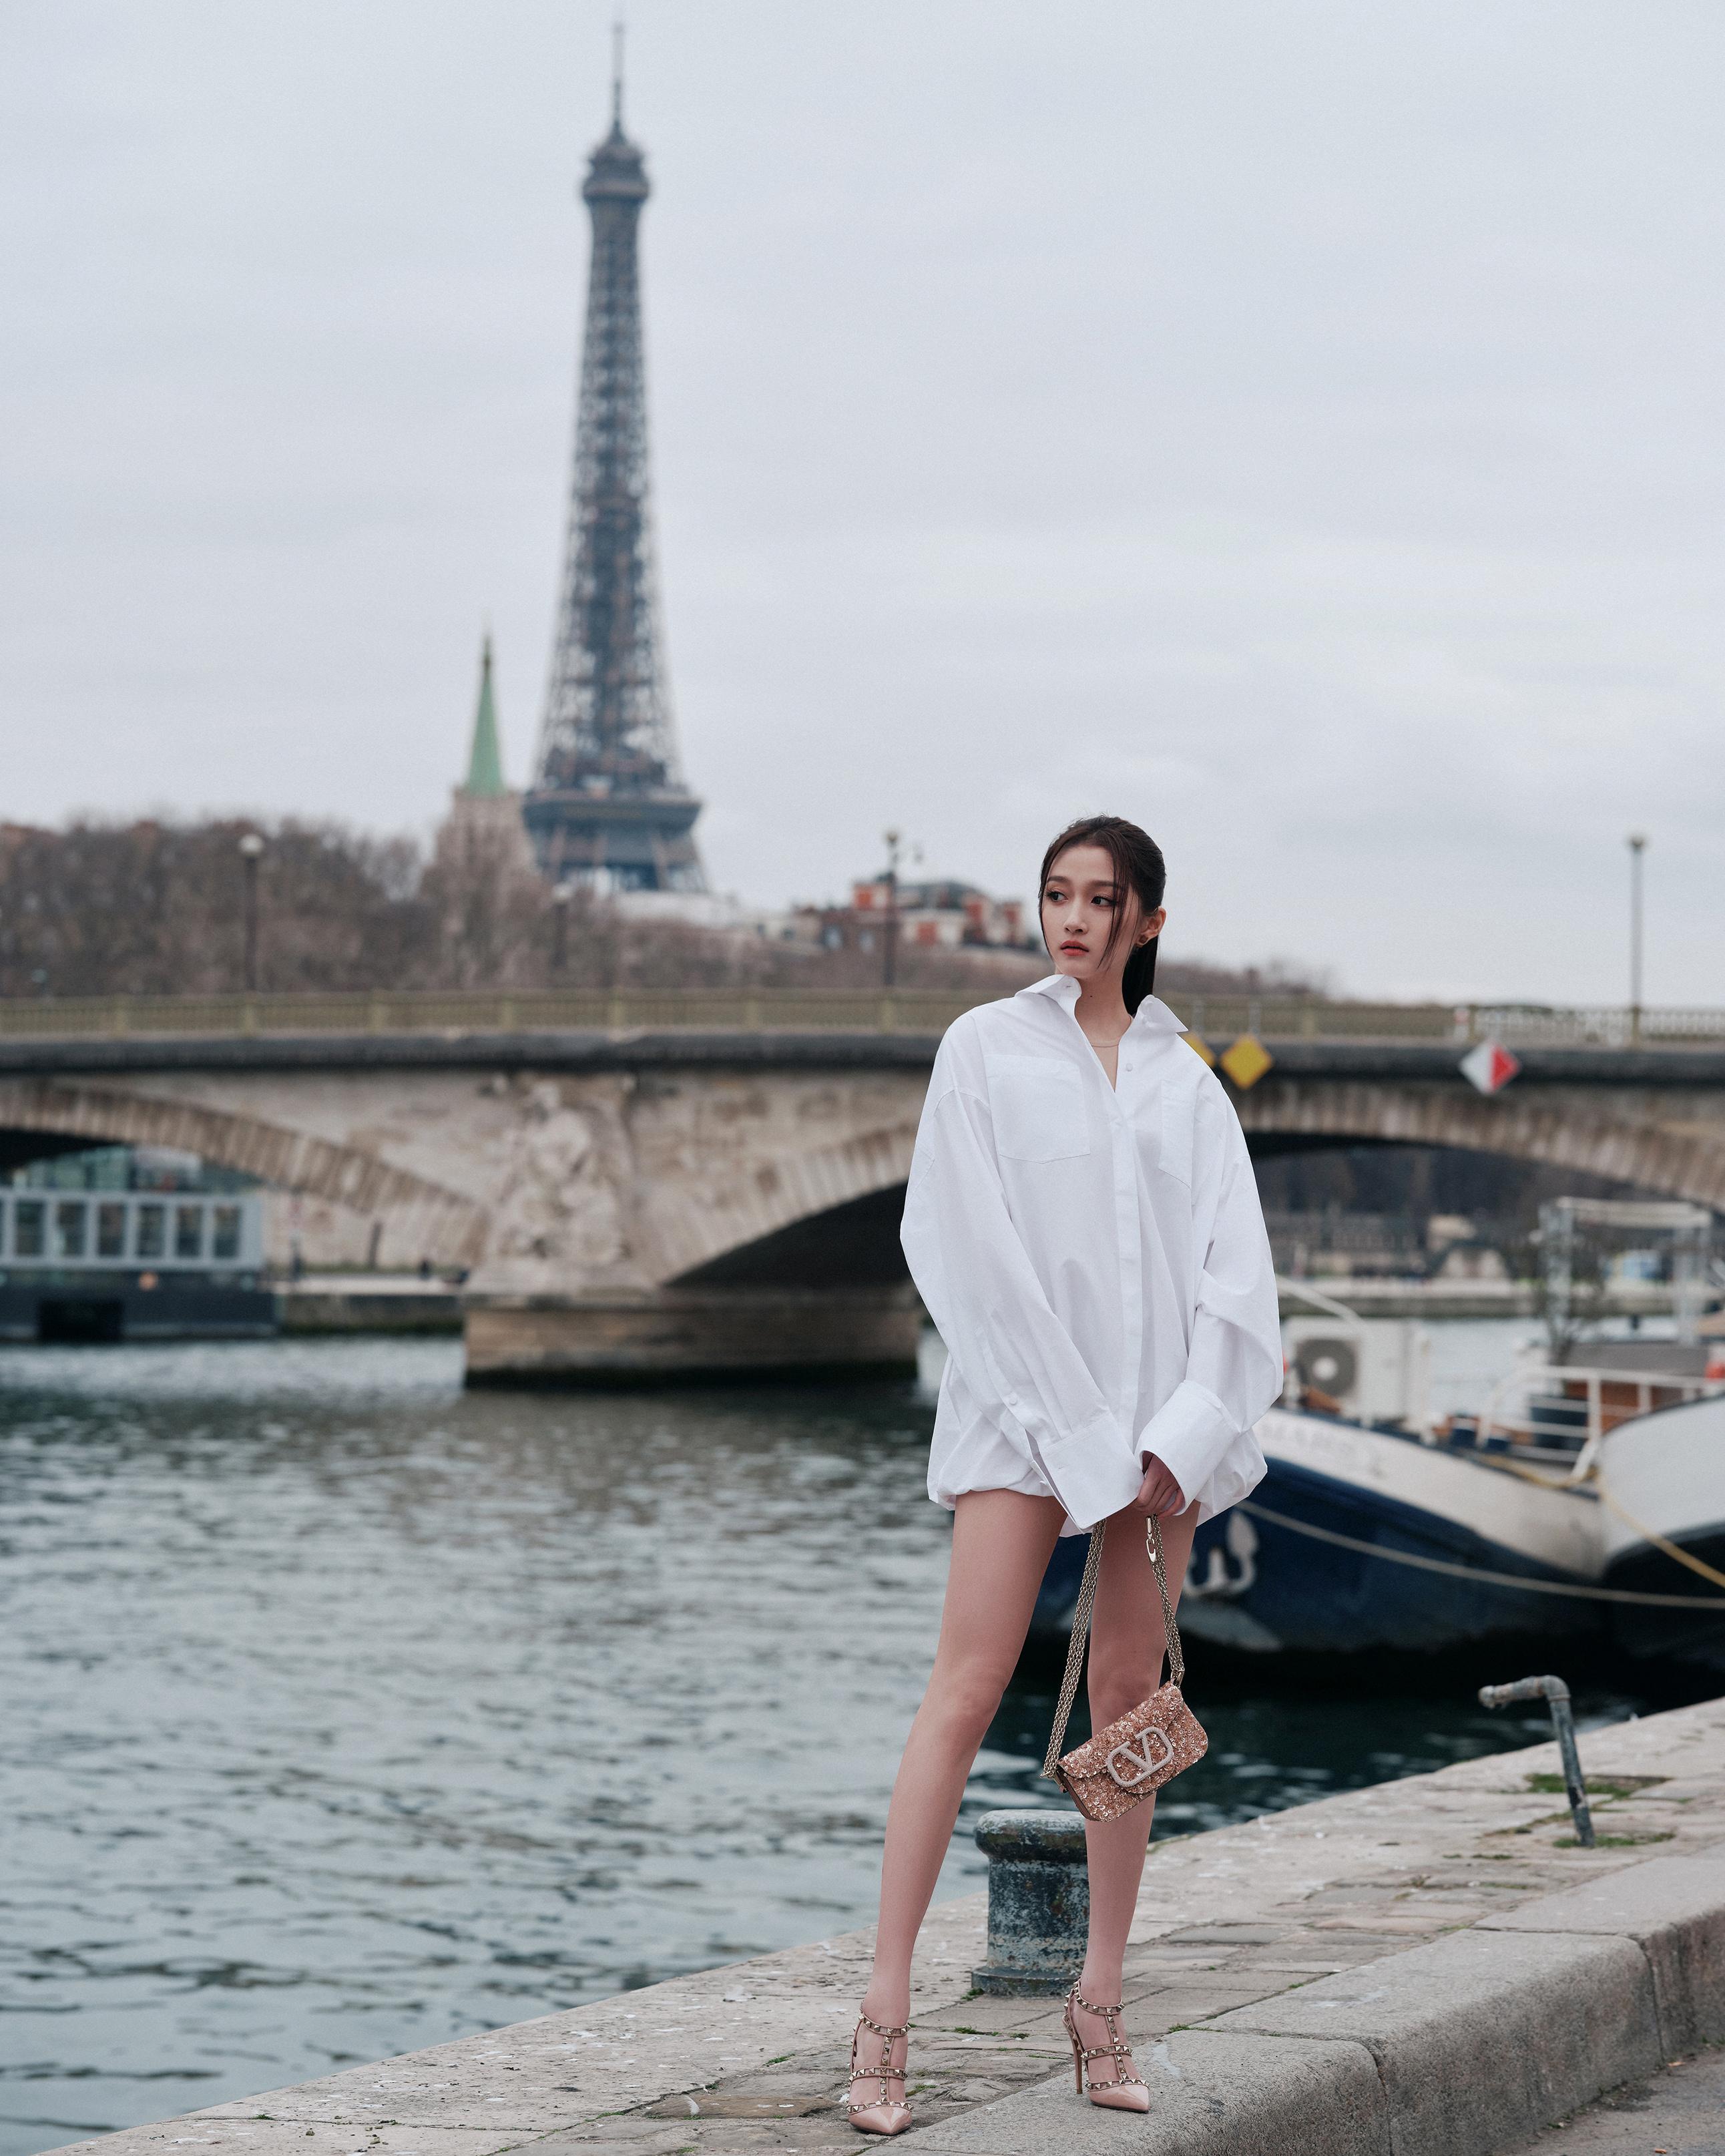 关晓彤巴黎时装周白衬衫造型,美腿实力抢镜!